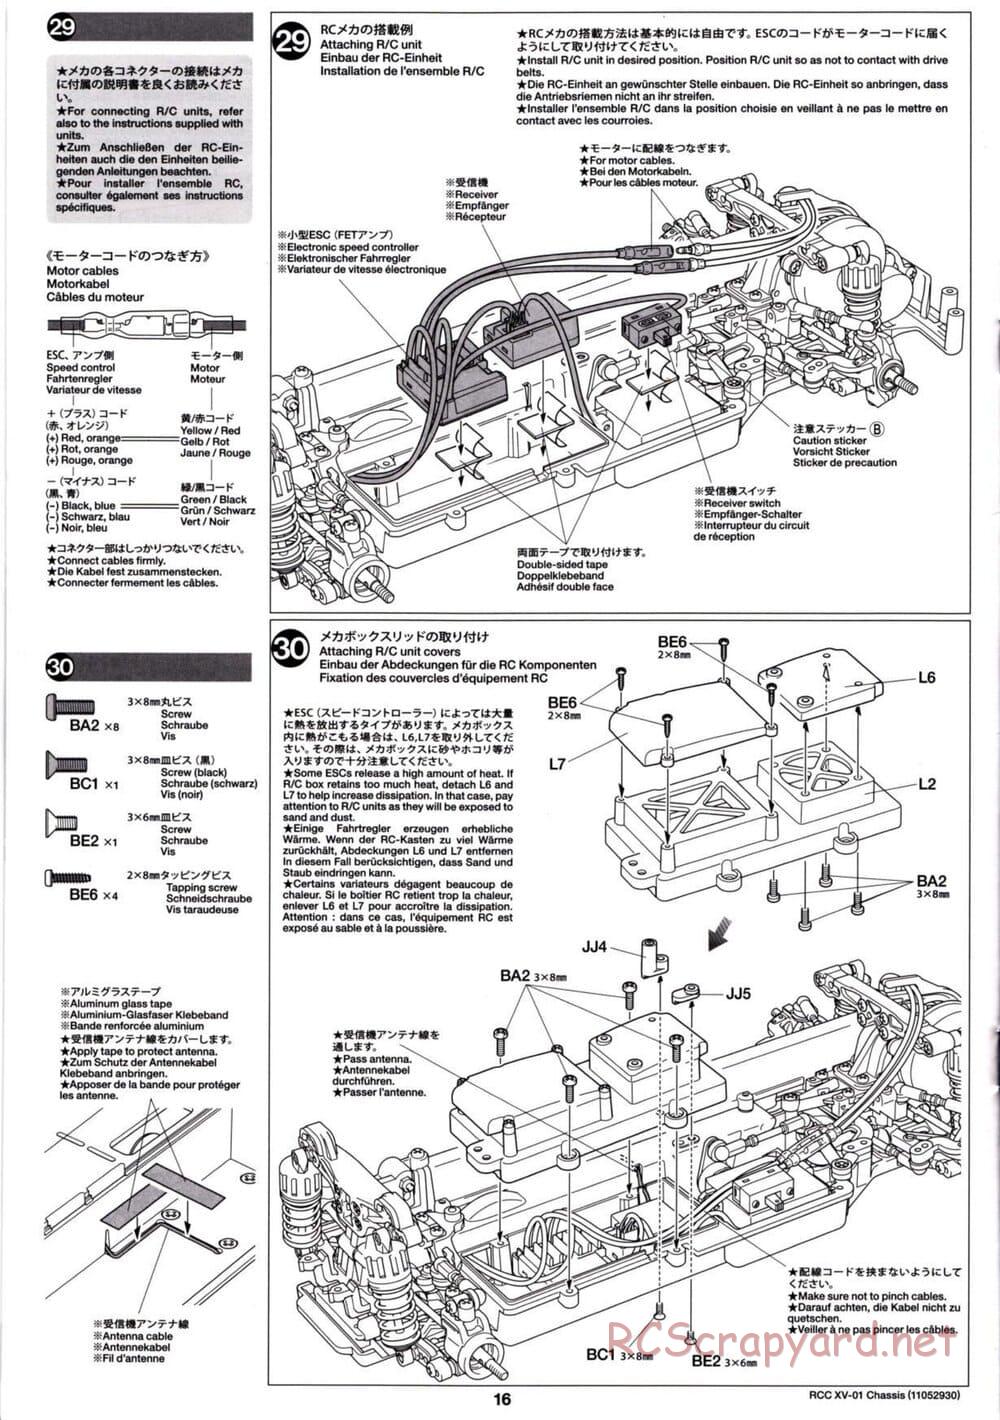 Tamiya - XV-01 Chassis - Manual - Page 16